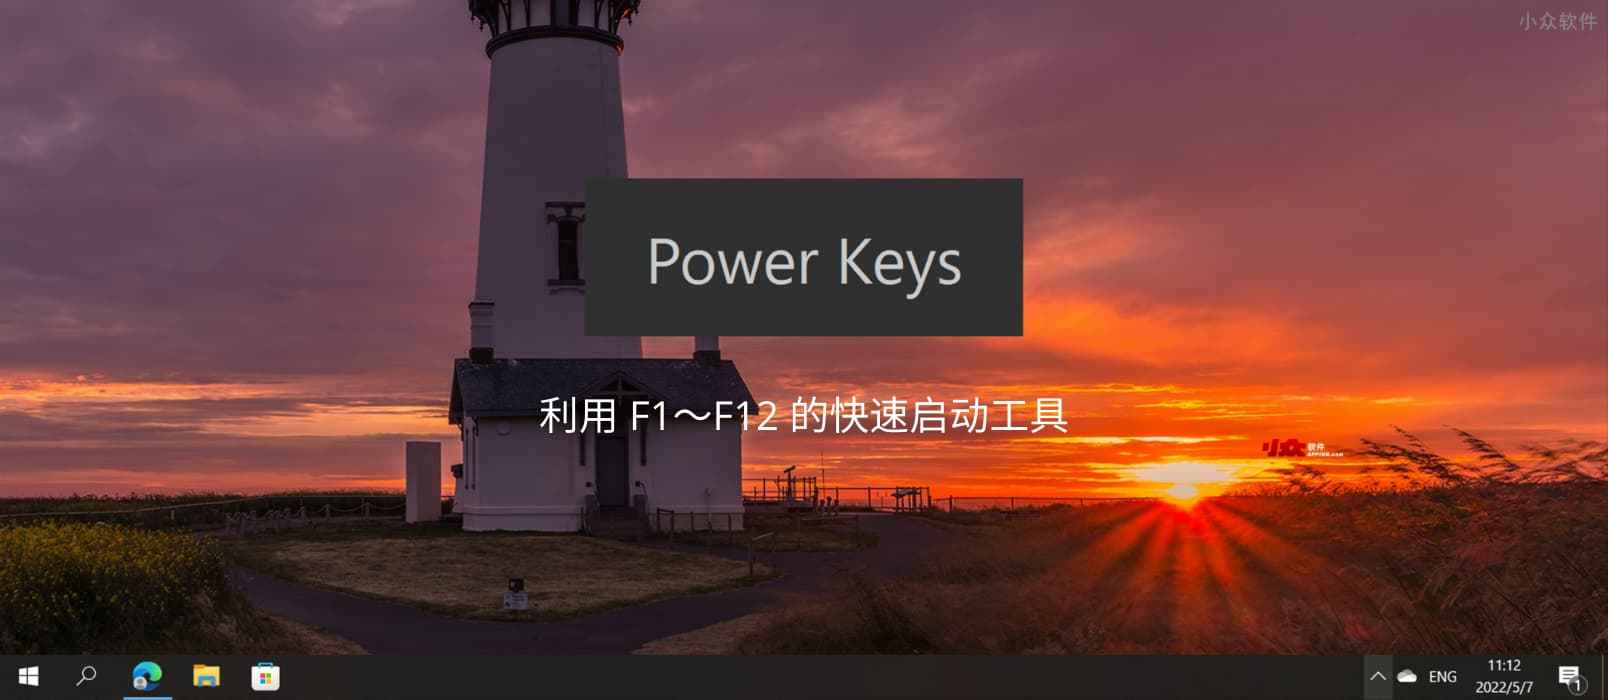 光速启动 Power Keys - 利用 F1～F12 的快速启动工具，还支持 Win 键增强、模拟数字小键盘区、游戏模式等功能